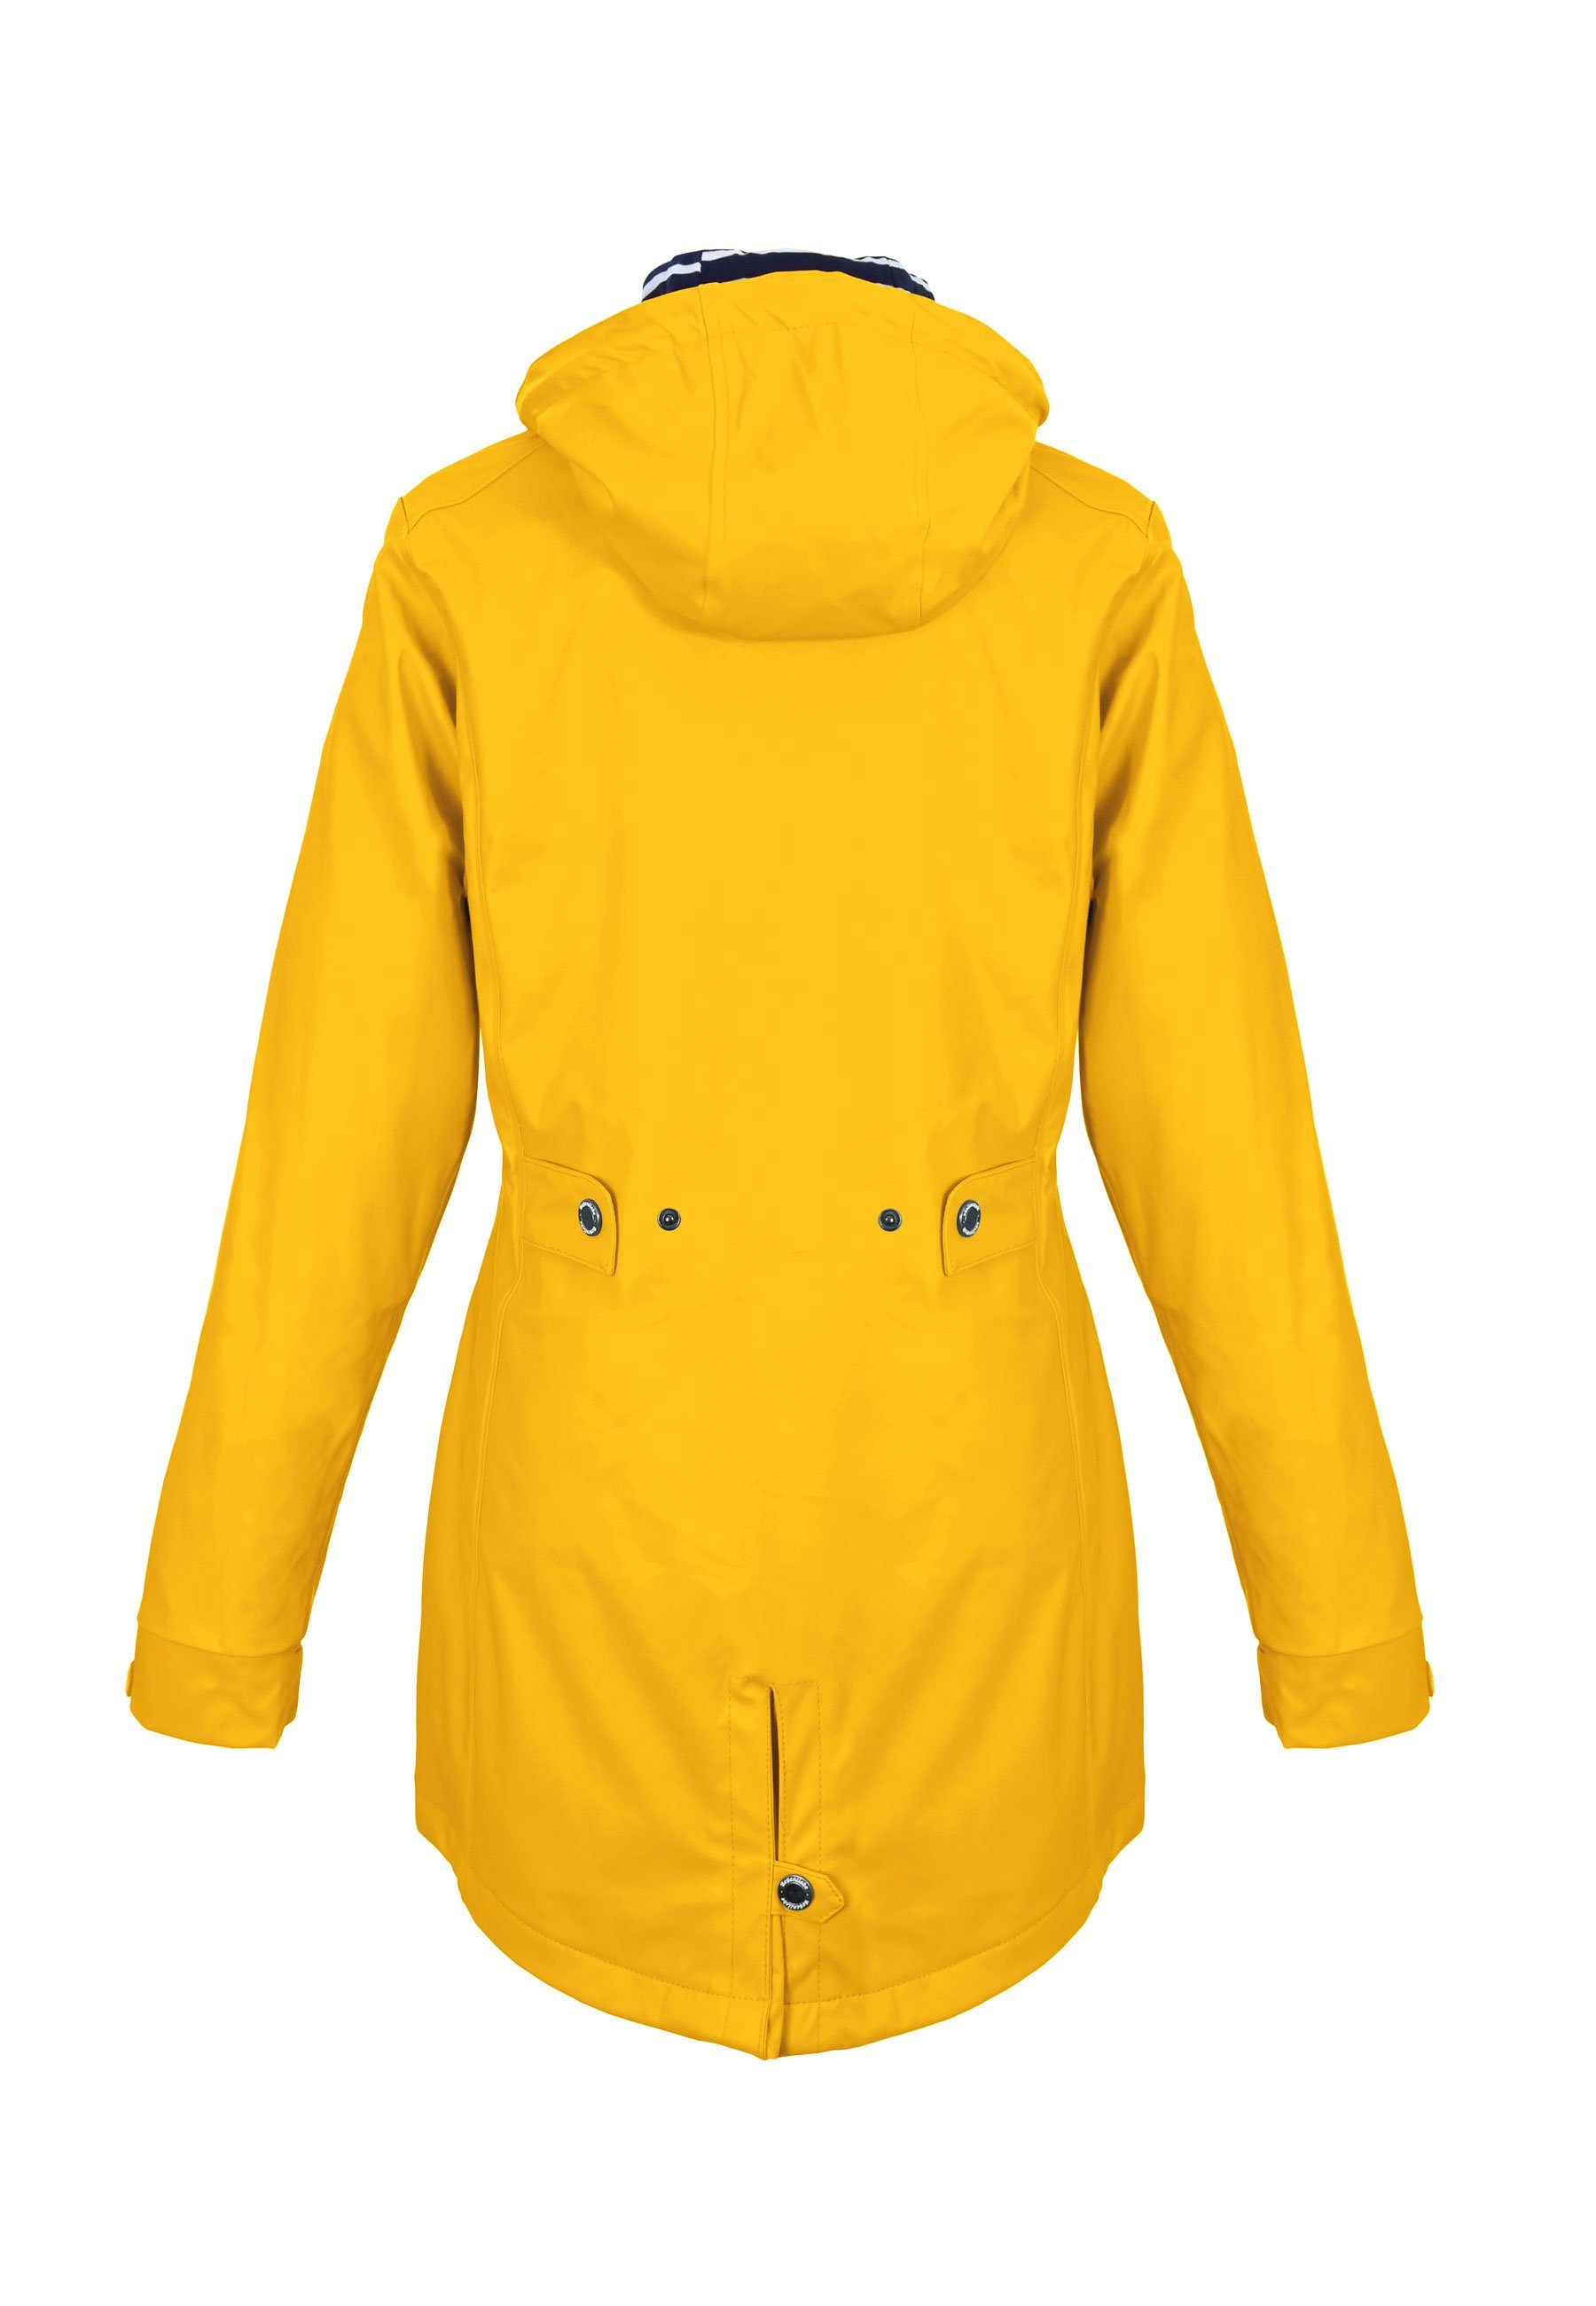 Regenmantel Friesennerz verstellbaren Regenjacke Kapuze gelb taillierter Regenliebe mit